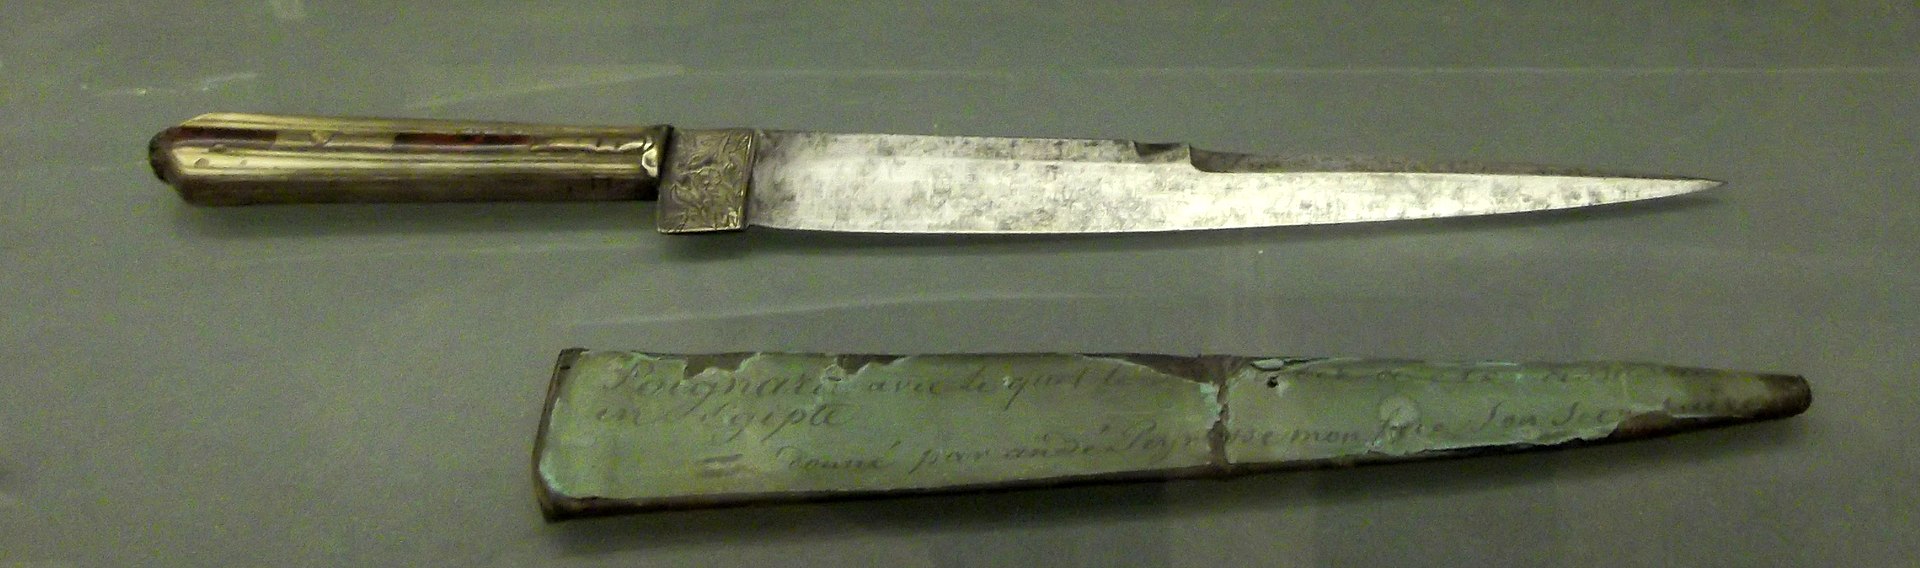 السكين المستخدمة في قتل كليبر